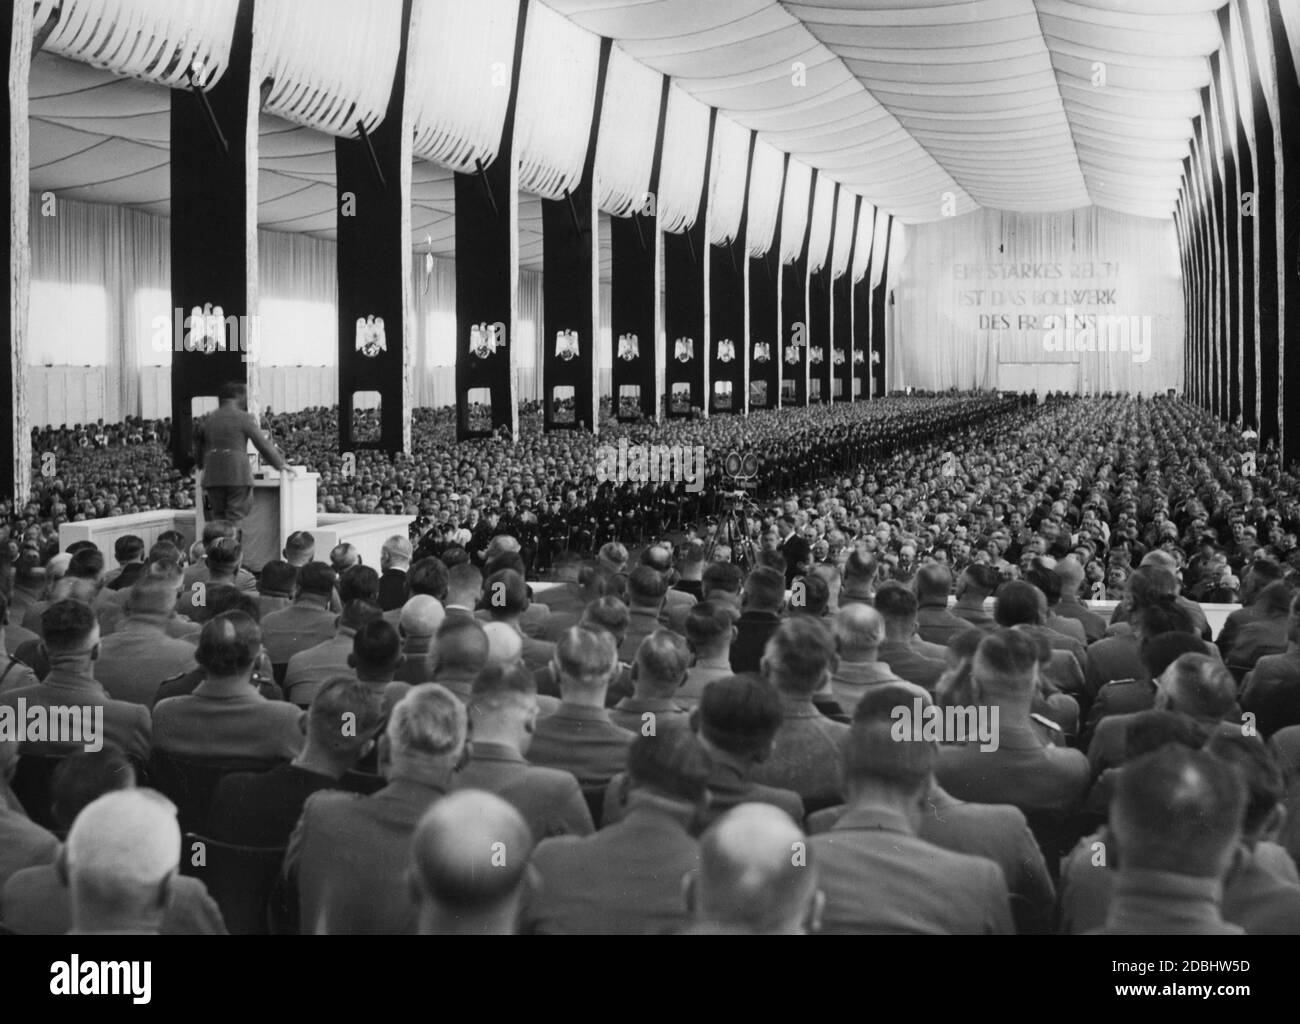 "Adolf Hitler hält eine Rede in der Luitpoldhalle auf der Konferenz der Deutschen Arbeiterfront. Auf der gegenüberliegenden Seite ist die Inschrift: "EIN starkes Reich ist das Bollwerk des Friedens". Auf der rechten Seite ist eine Filmkamera." Stockfoto